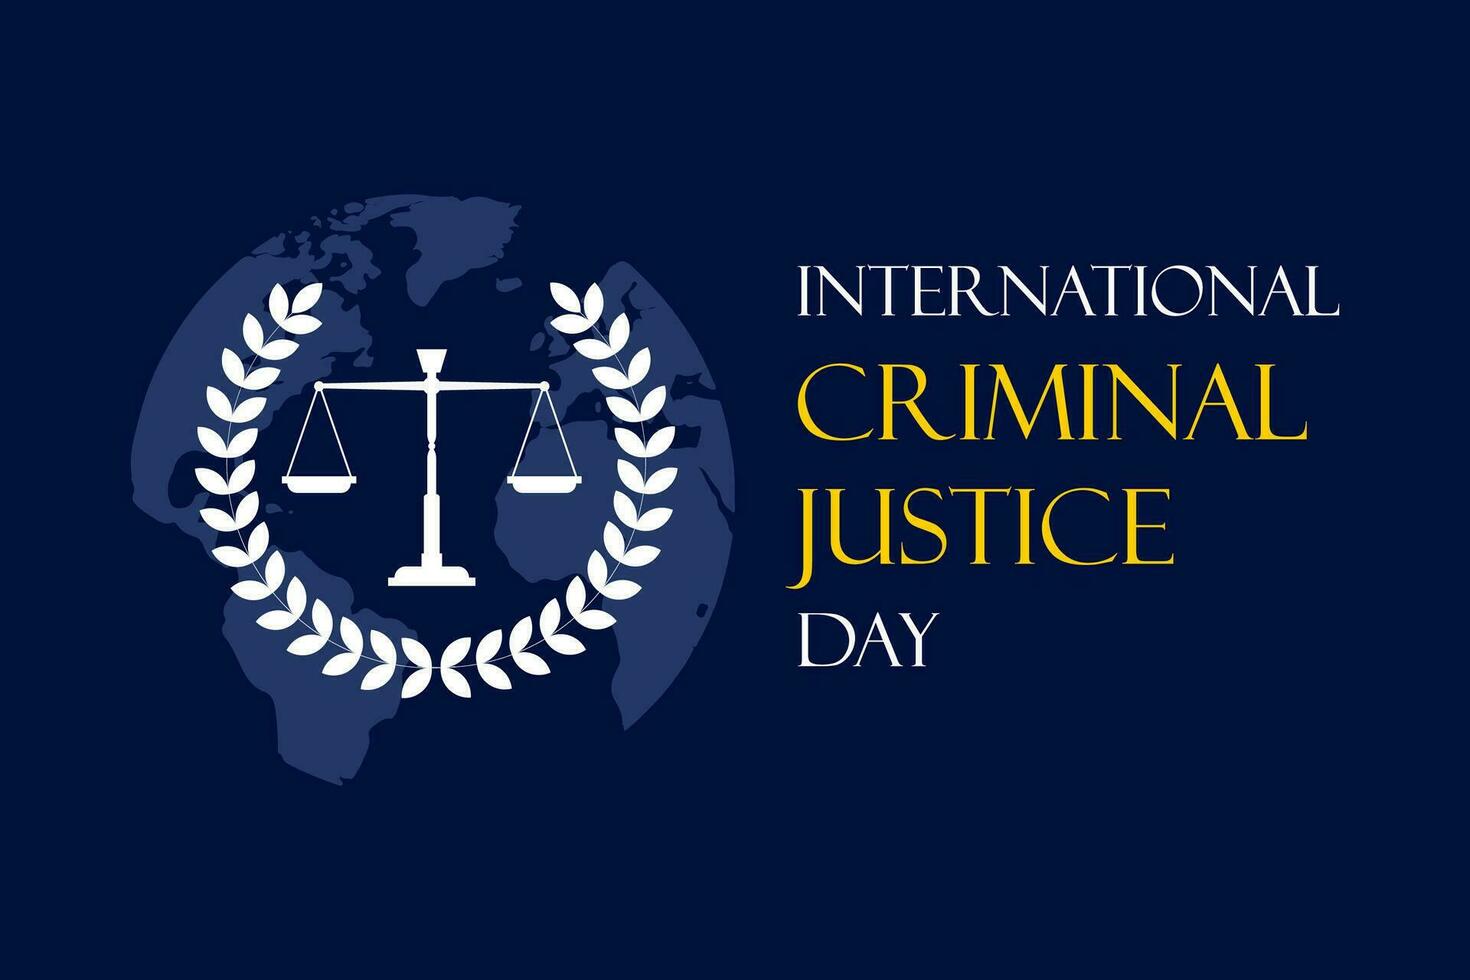 vector illustration of international criminal justice day poster or banner design